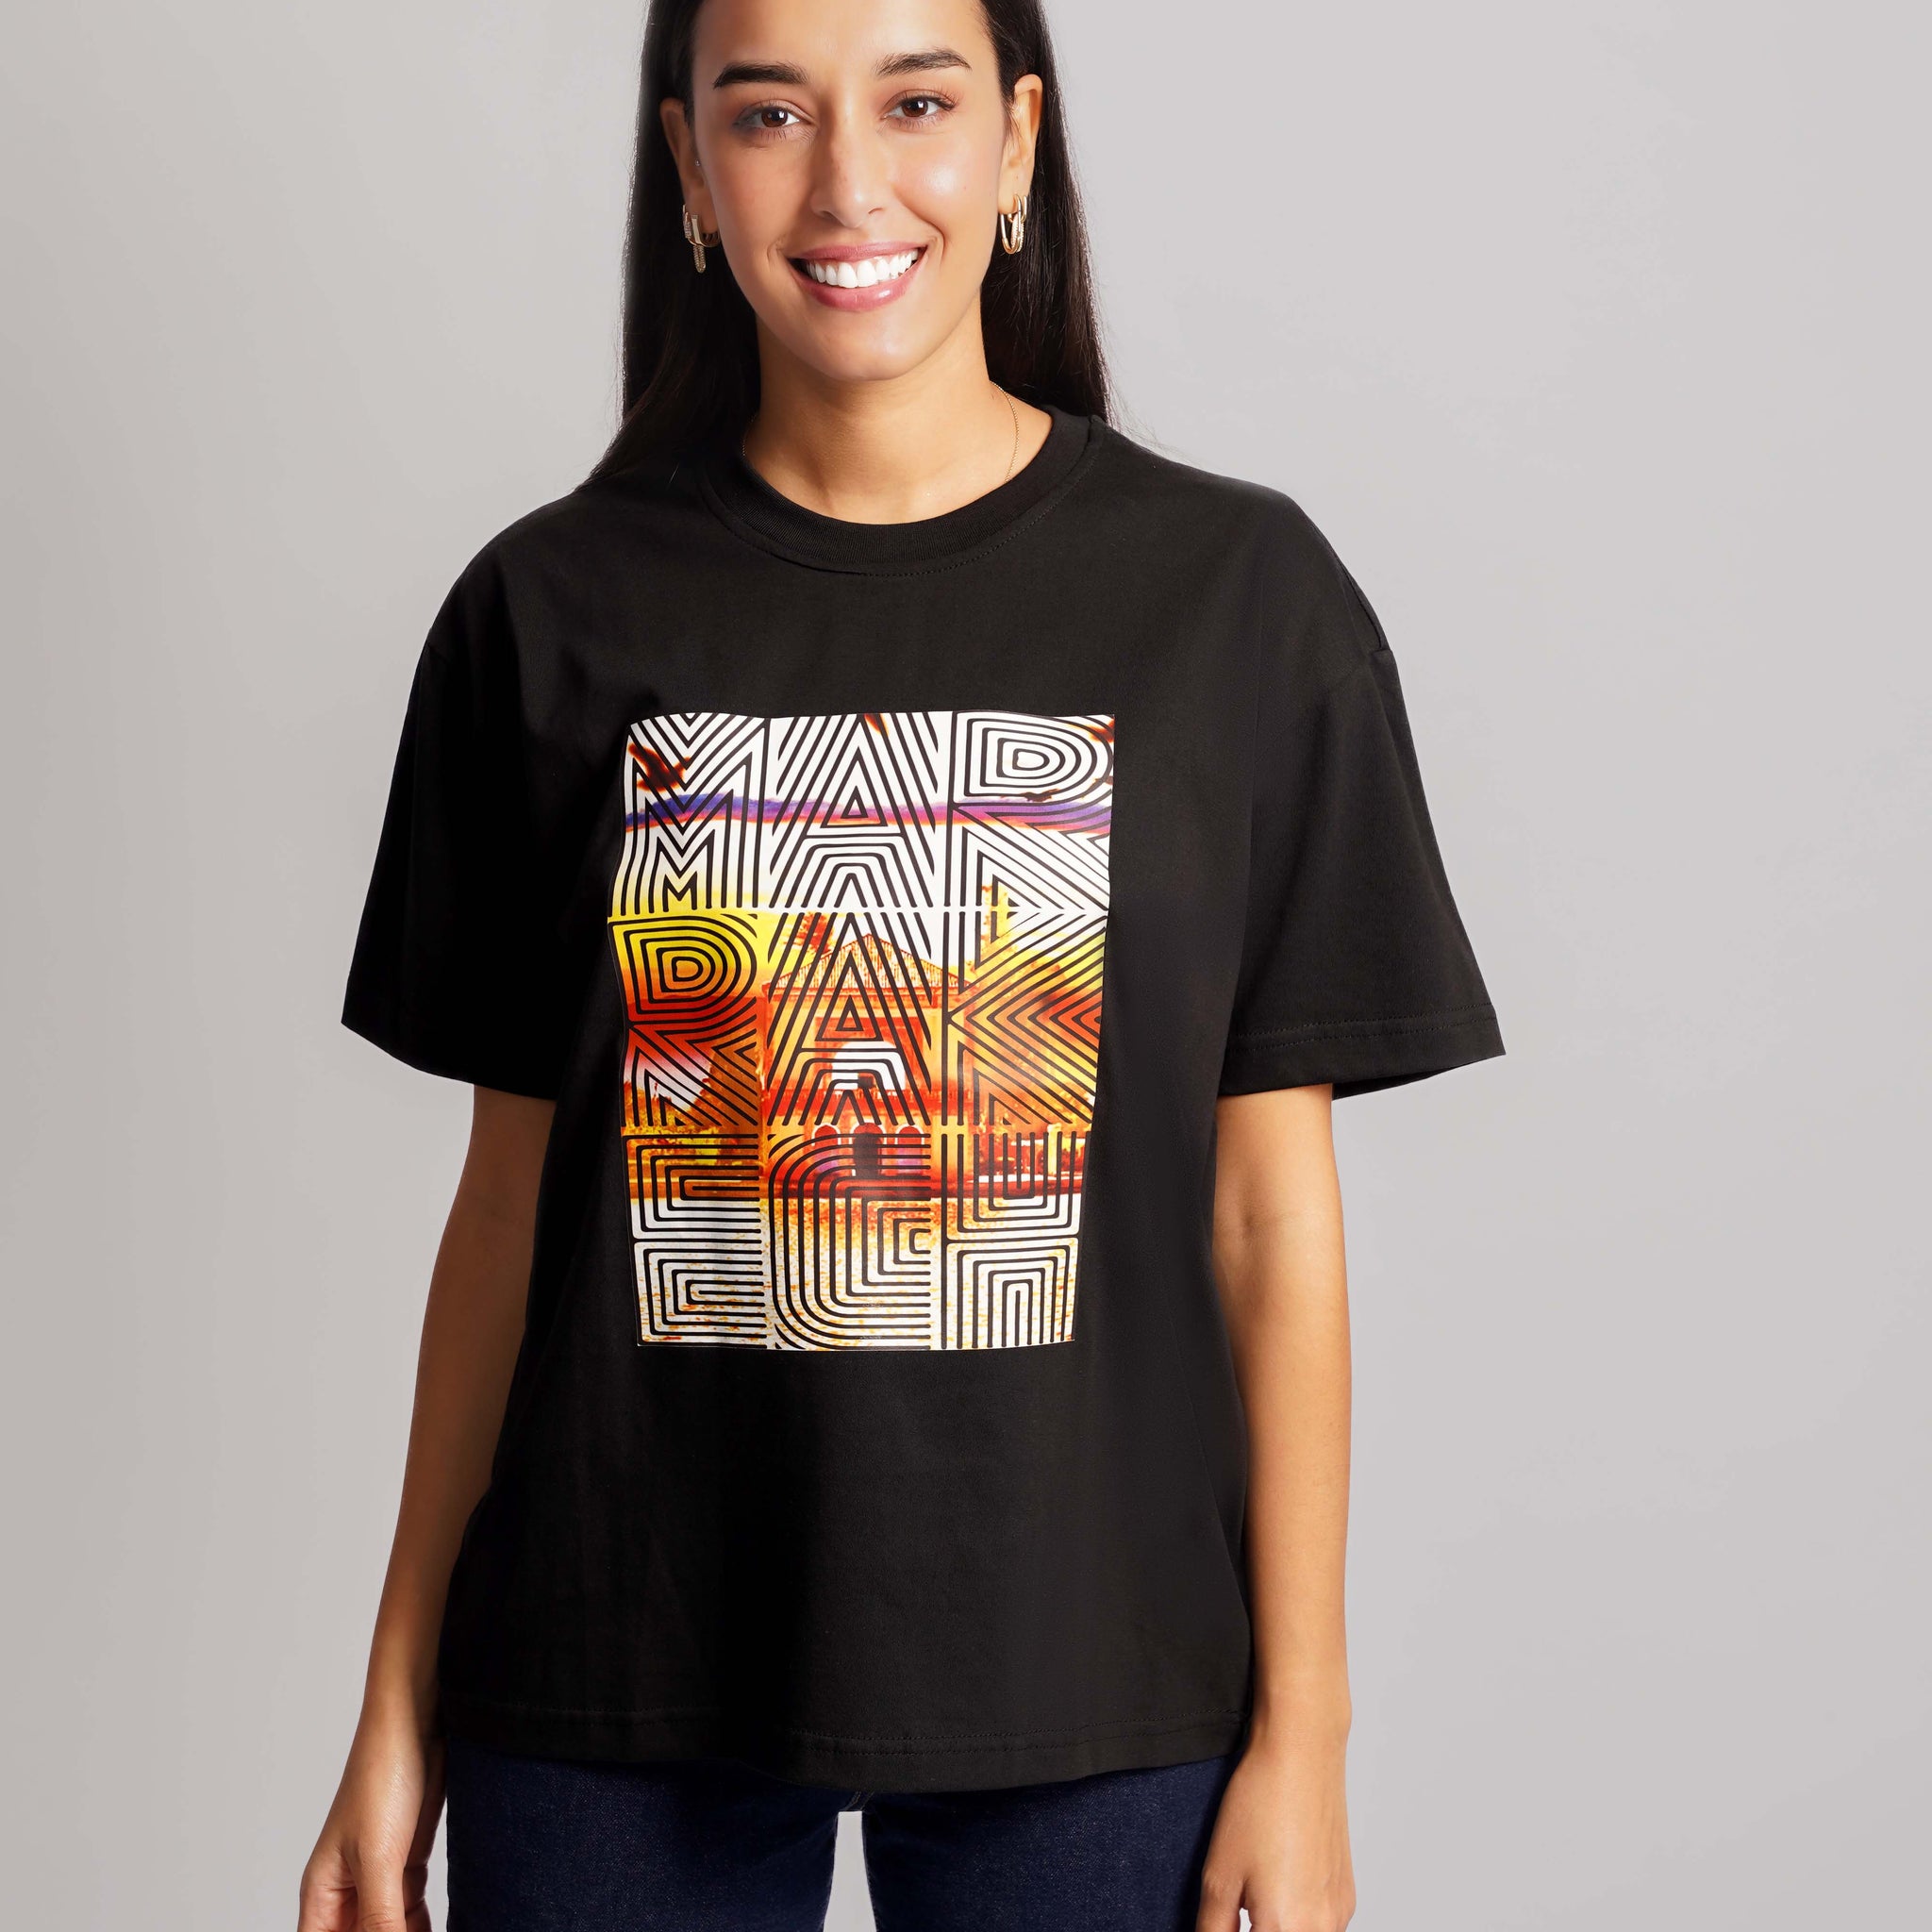 Marrakech Vibe T-Shirt Women